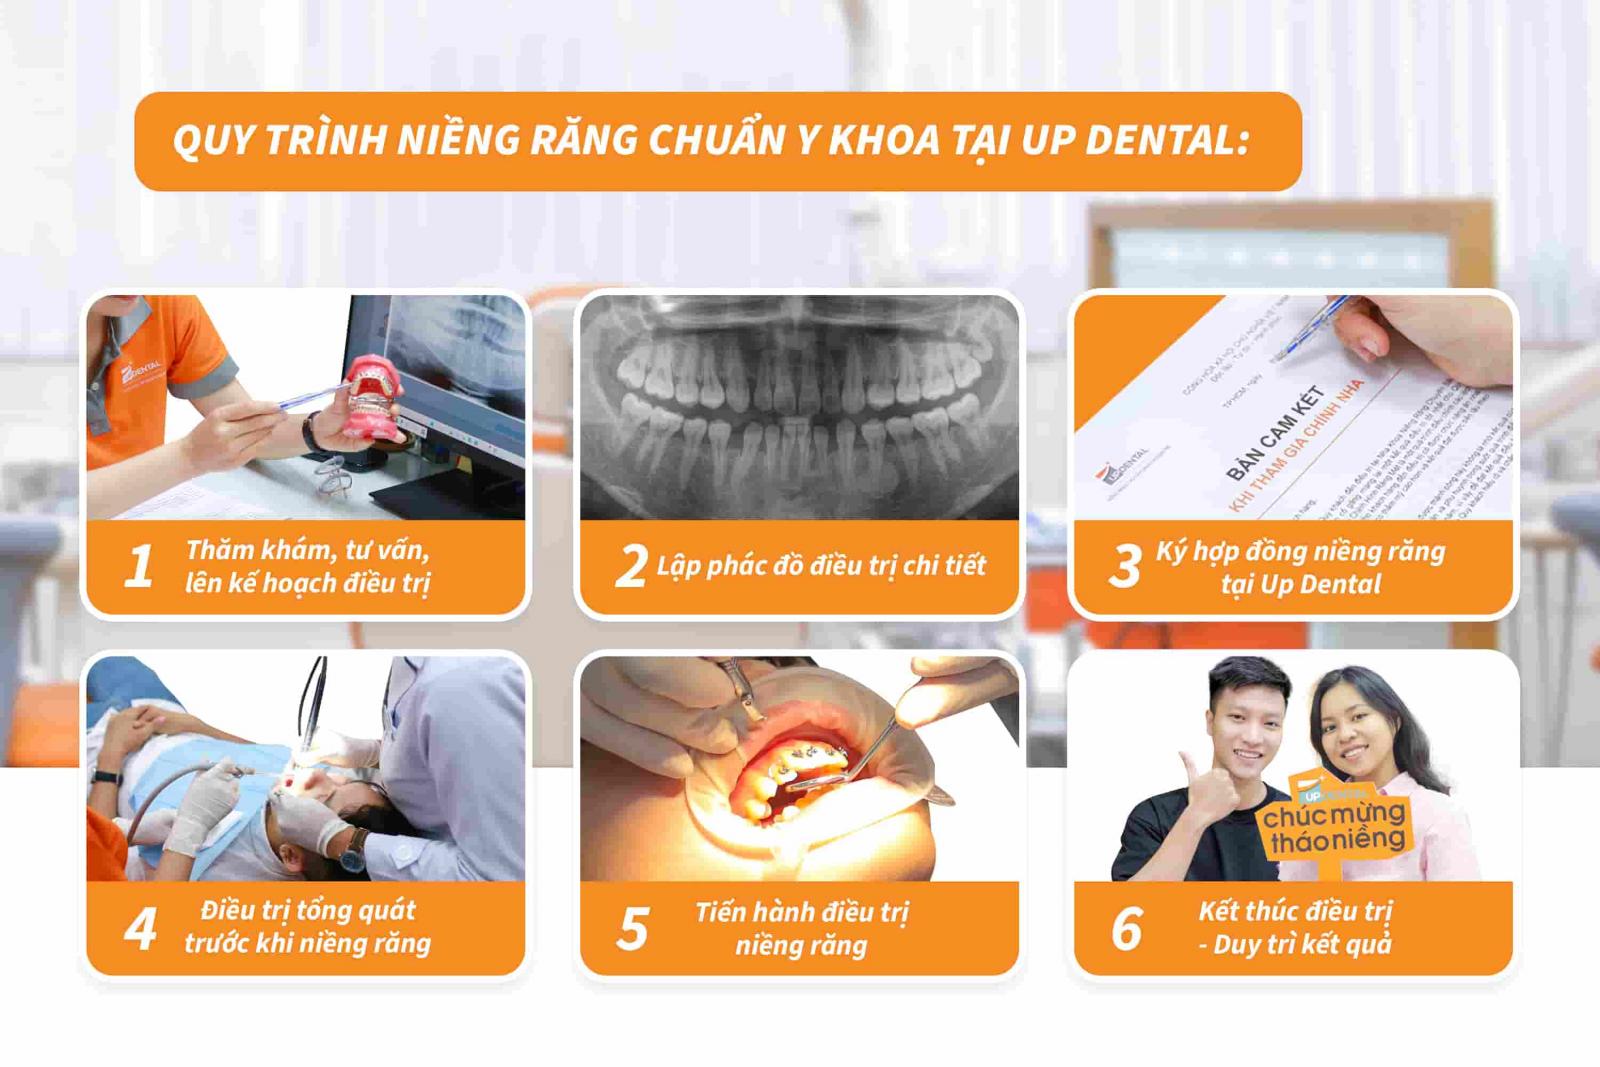 Quy trình niềng răng chuẩn y khoa tại Up Dental